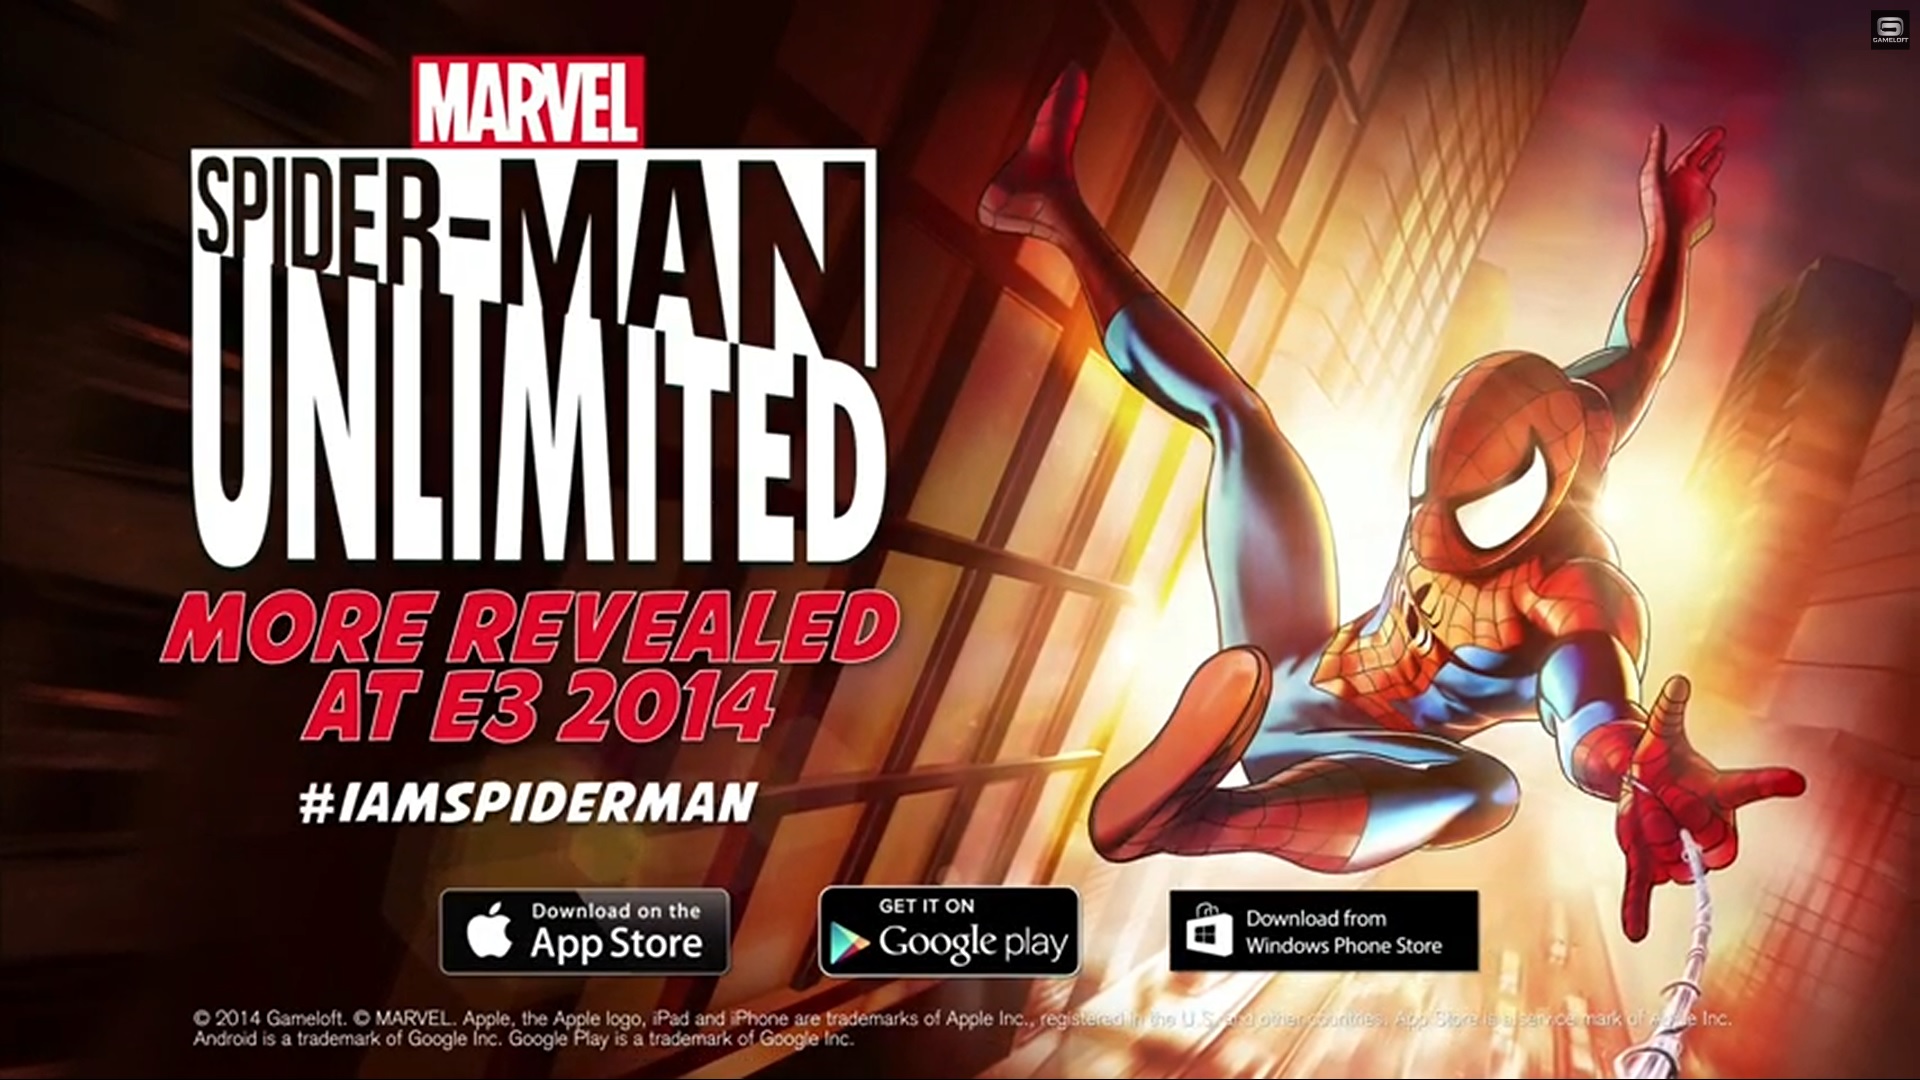 download spider man gameloft